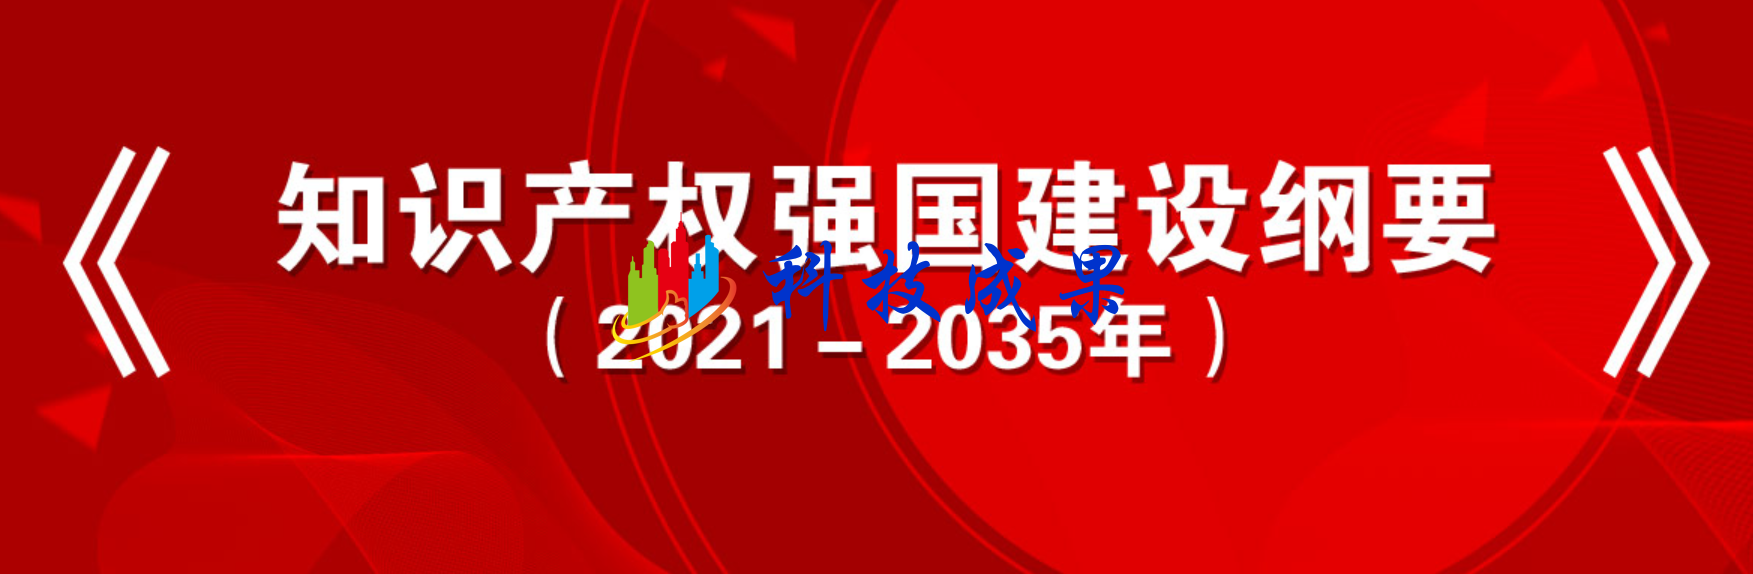 中共中央 国务院印发《知识产权强国建设纲要（2021－2035年）》 ... ... ...